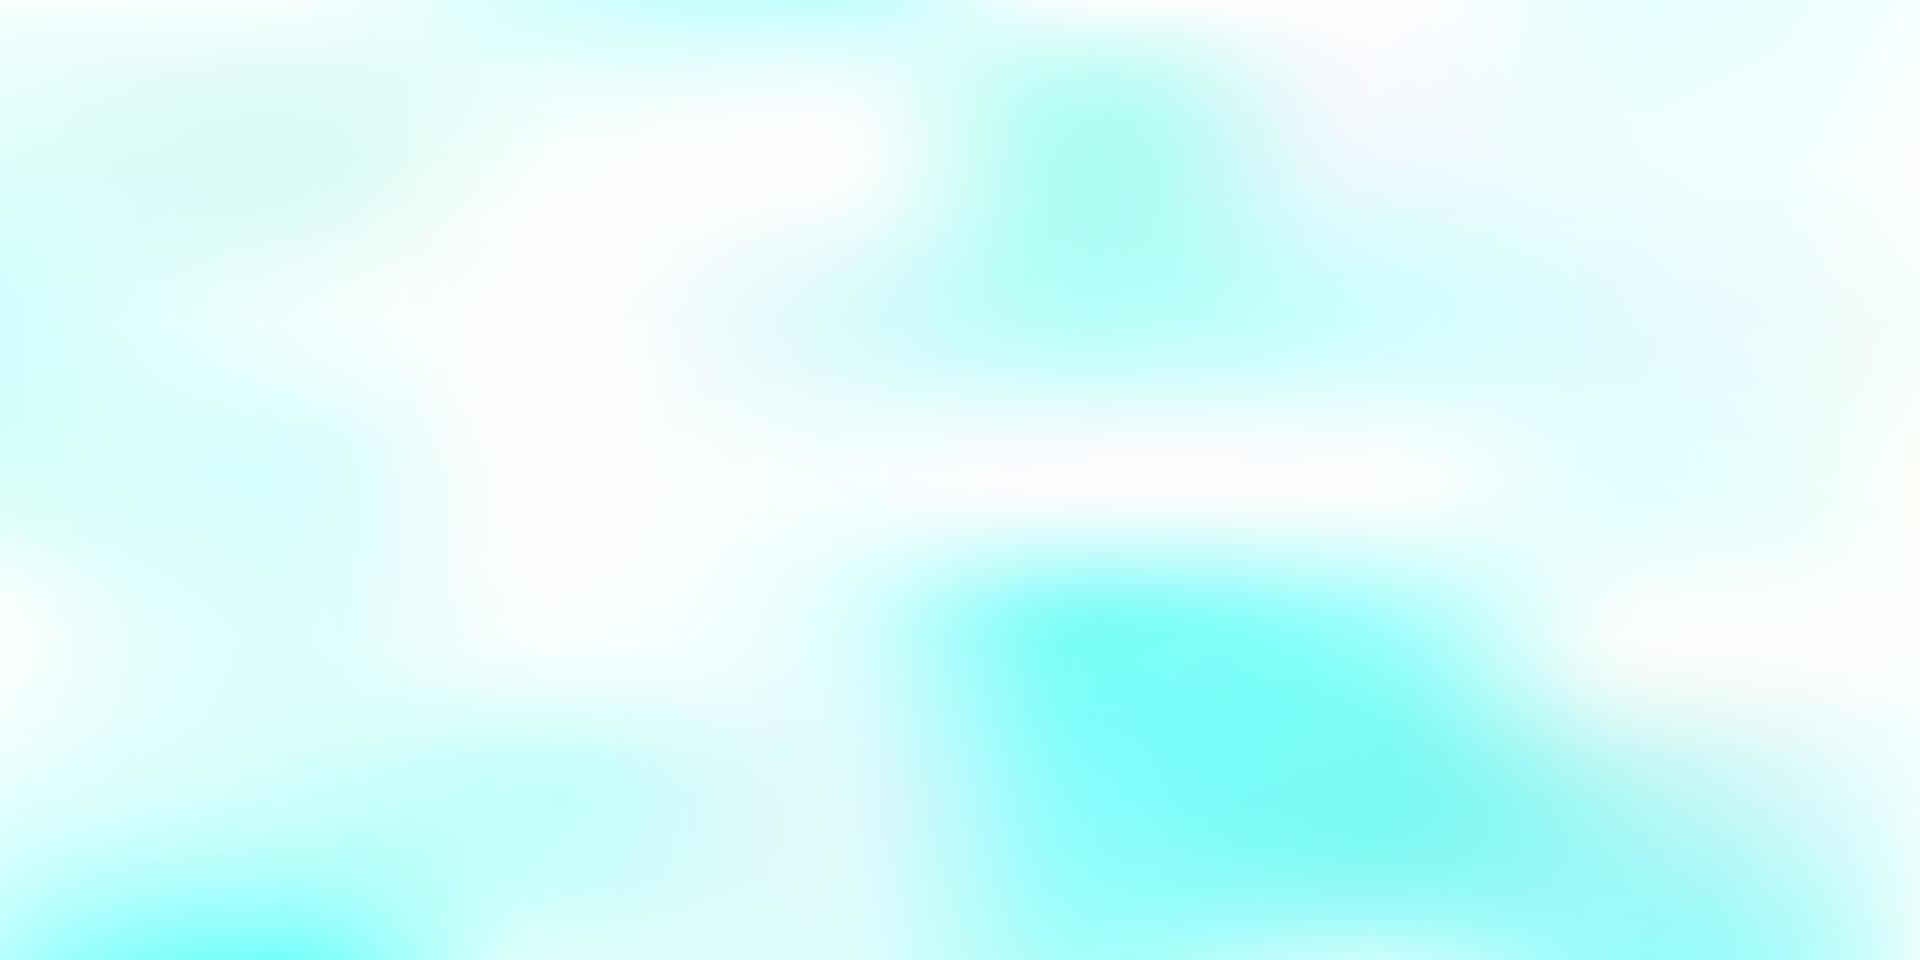 Light blue vector blurred texture.